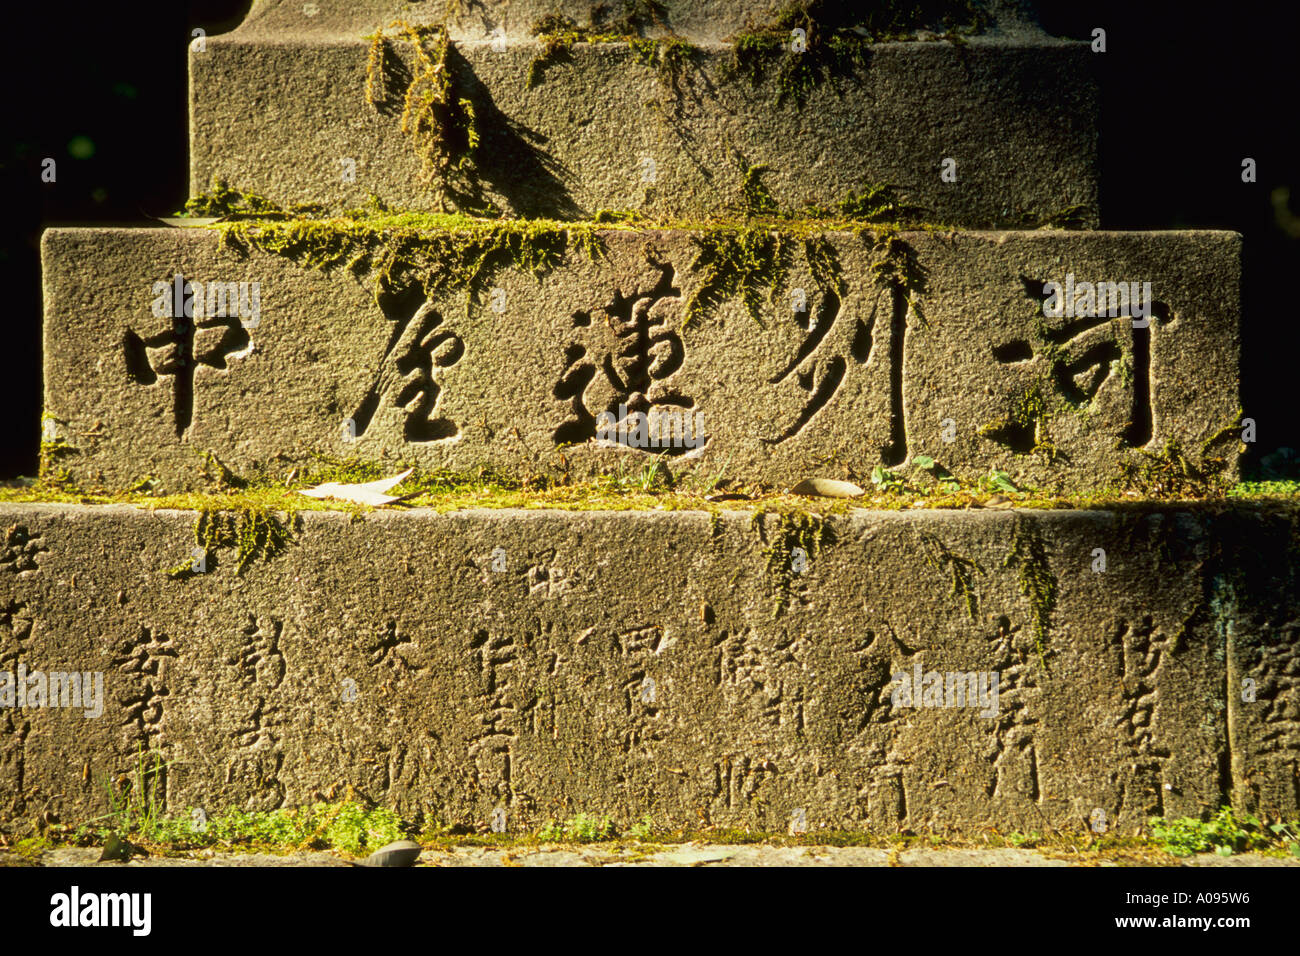 Japon Nara lettres gravées dans la pierre Banque D'Images